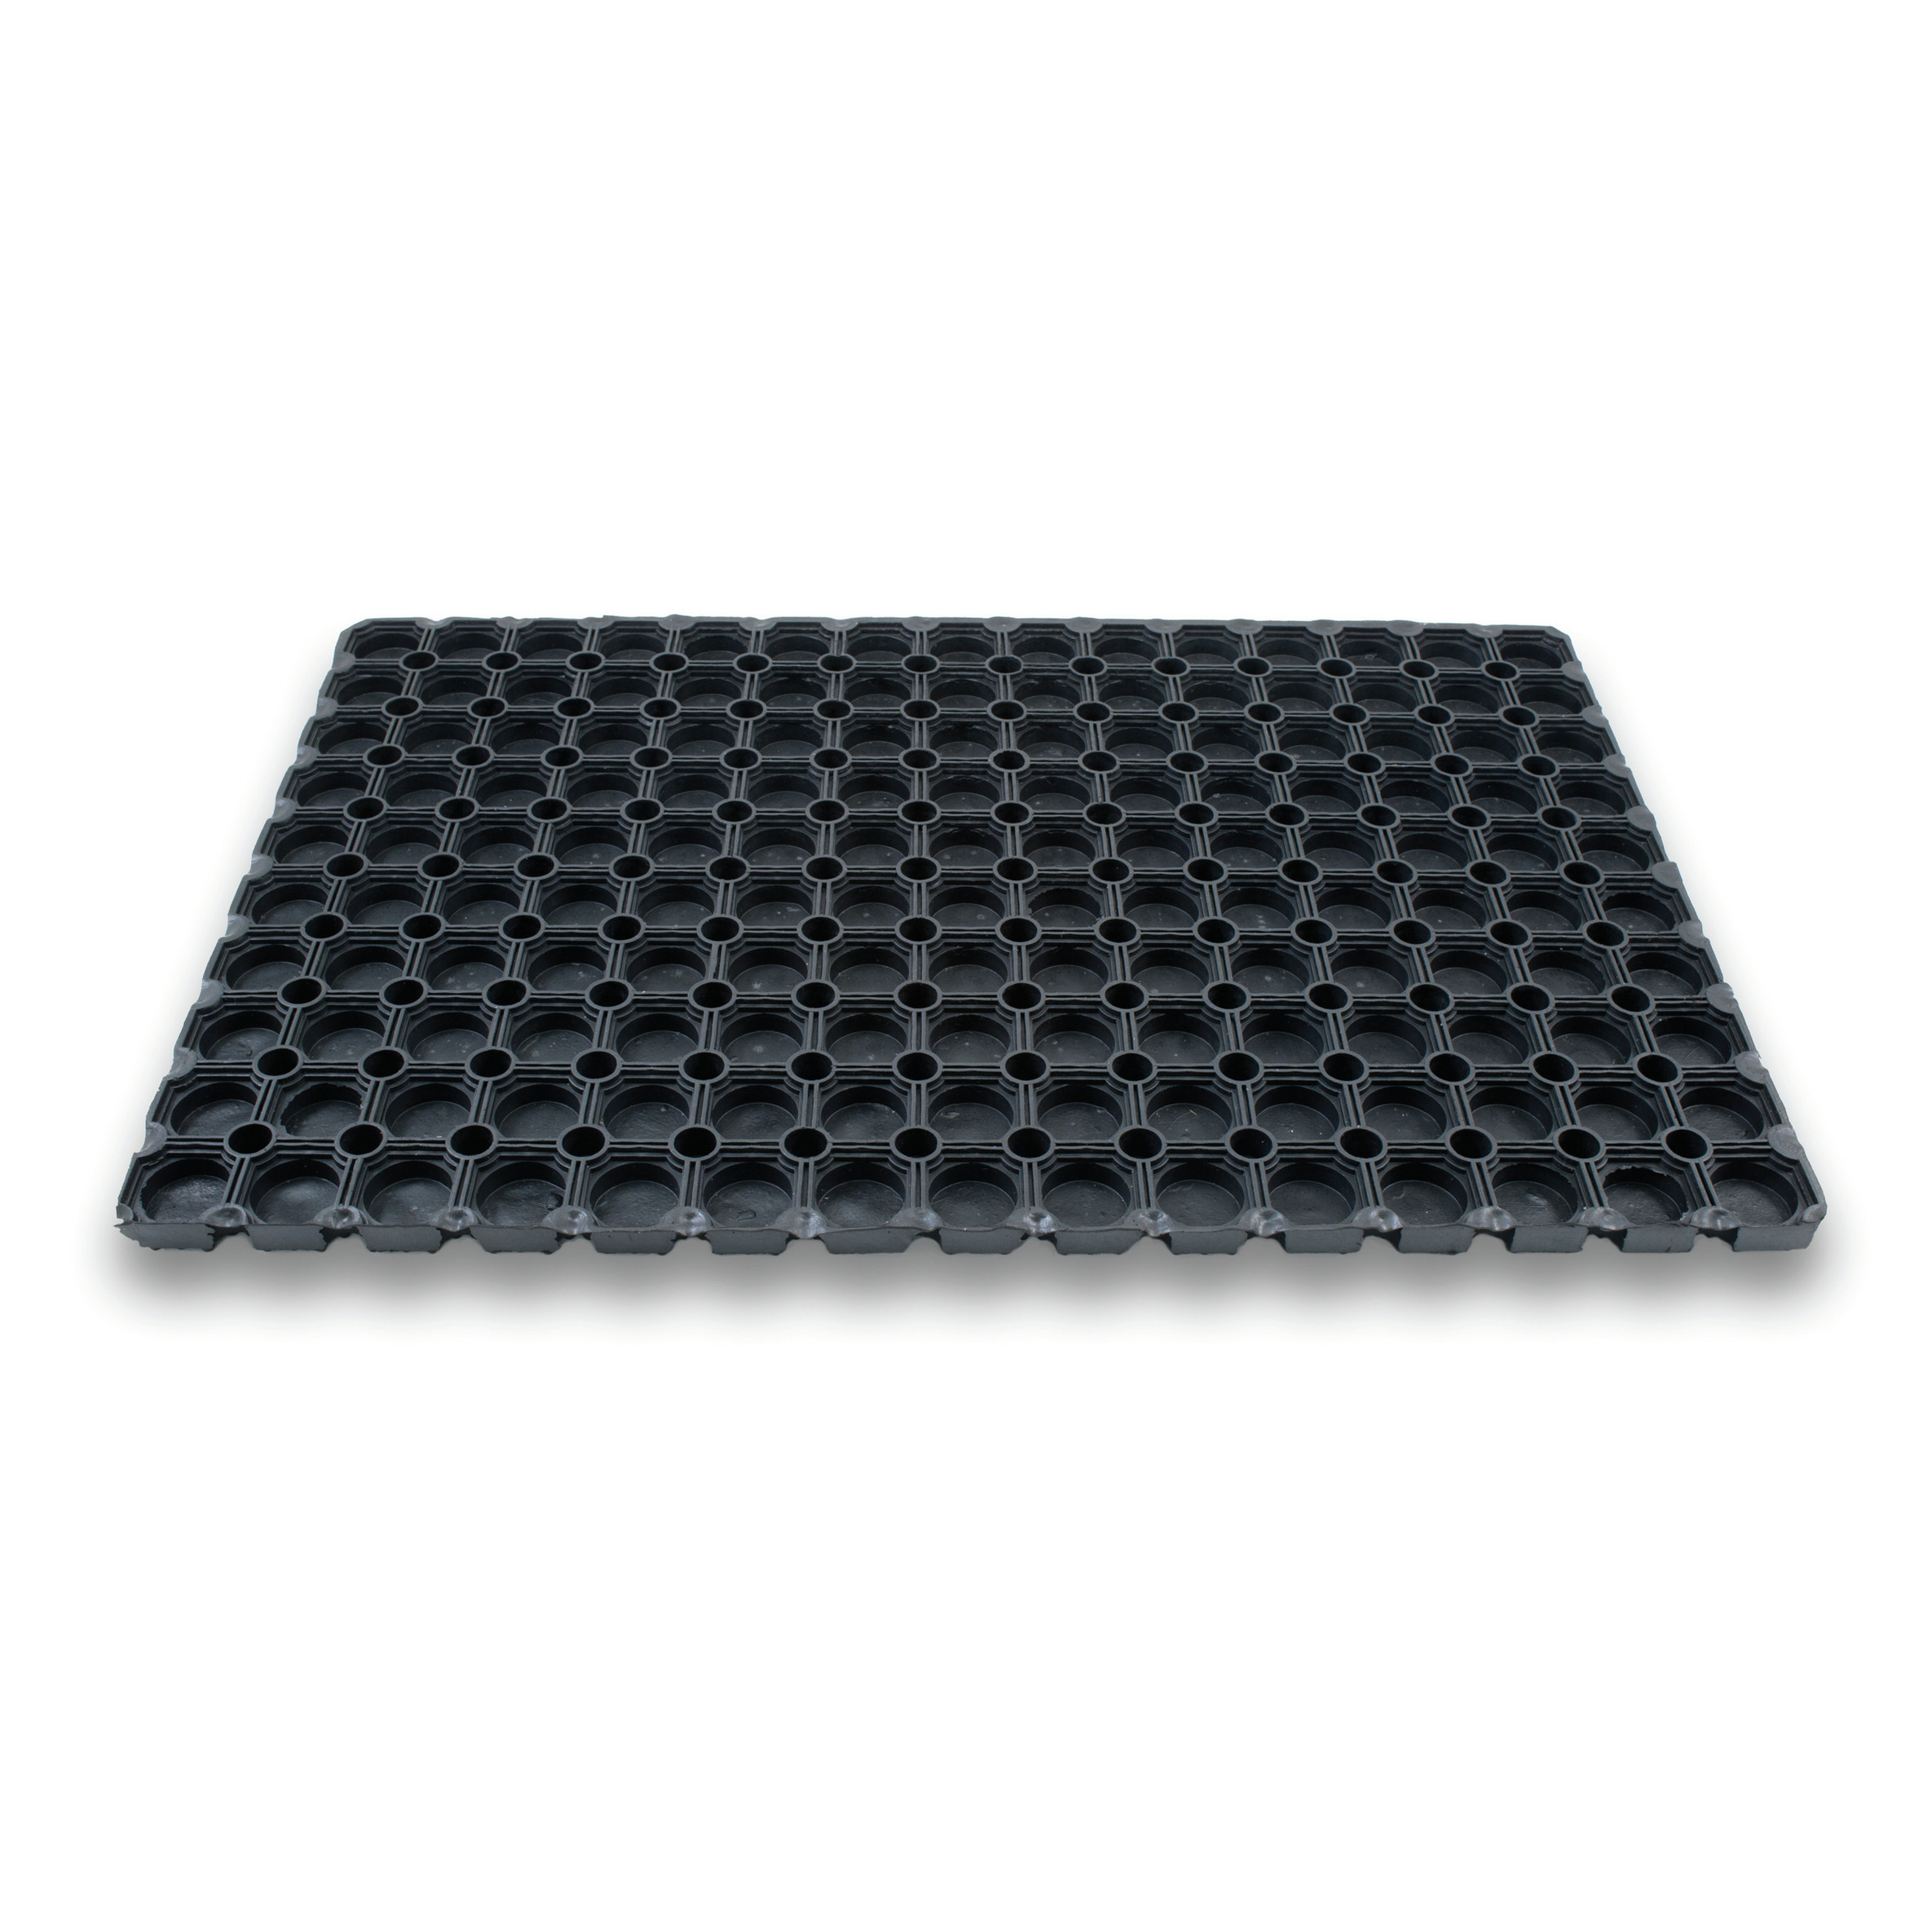 1x Rubberen deurmatten/schoonloopmatten zwart 40 x 60 cm rechthoekig - Deurmat schoonloopmat - Inloopmat/inloopmatten - Buitenmatten - Voeten vegen